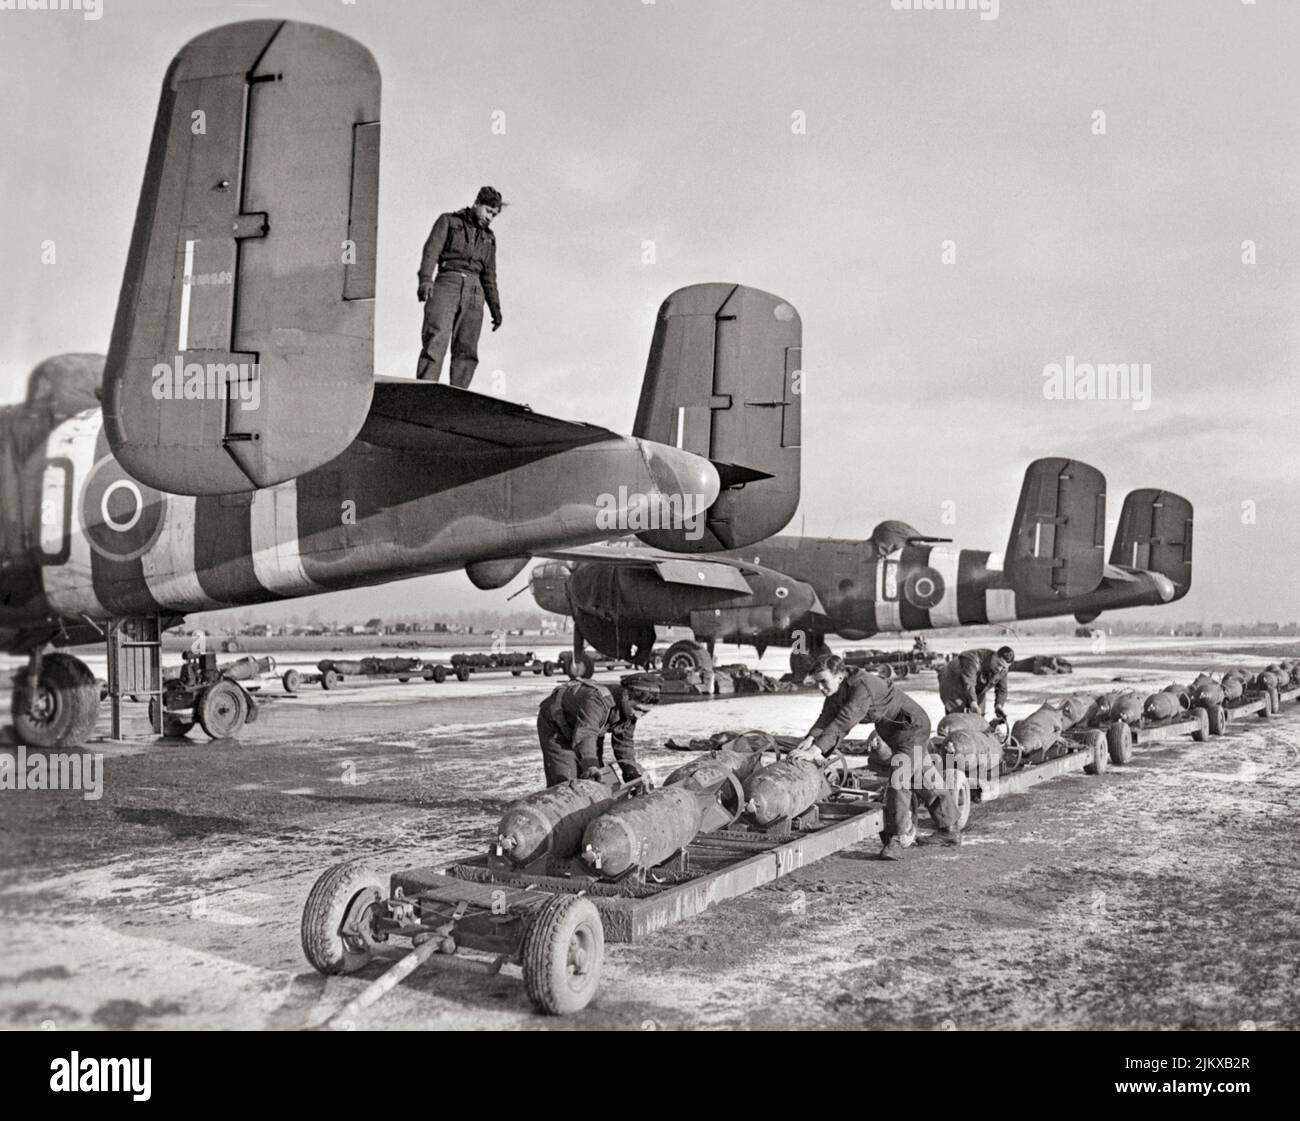 RAF und niederländische Marinebodenbesatzungen bereiten sich darauf vor, 500-Pfund-MC-Bomben in den nordamerikanischen Mitchell Mark IIS der 98. Staffel der RAF während der winterlichen Bedingungen in Belgien zu laden. Der North American B-25 Mitchell war ein mittelgroßer Bomber, der 1941 eingeführt und von vielen alliierten Luftstreitkräften eingesetzt wurde. Stockfoto